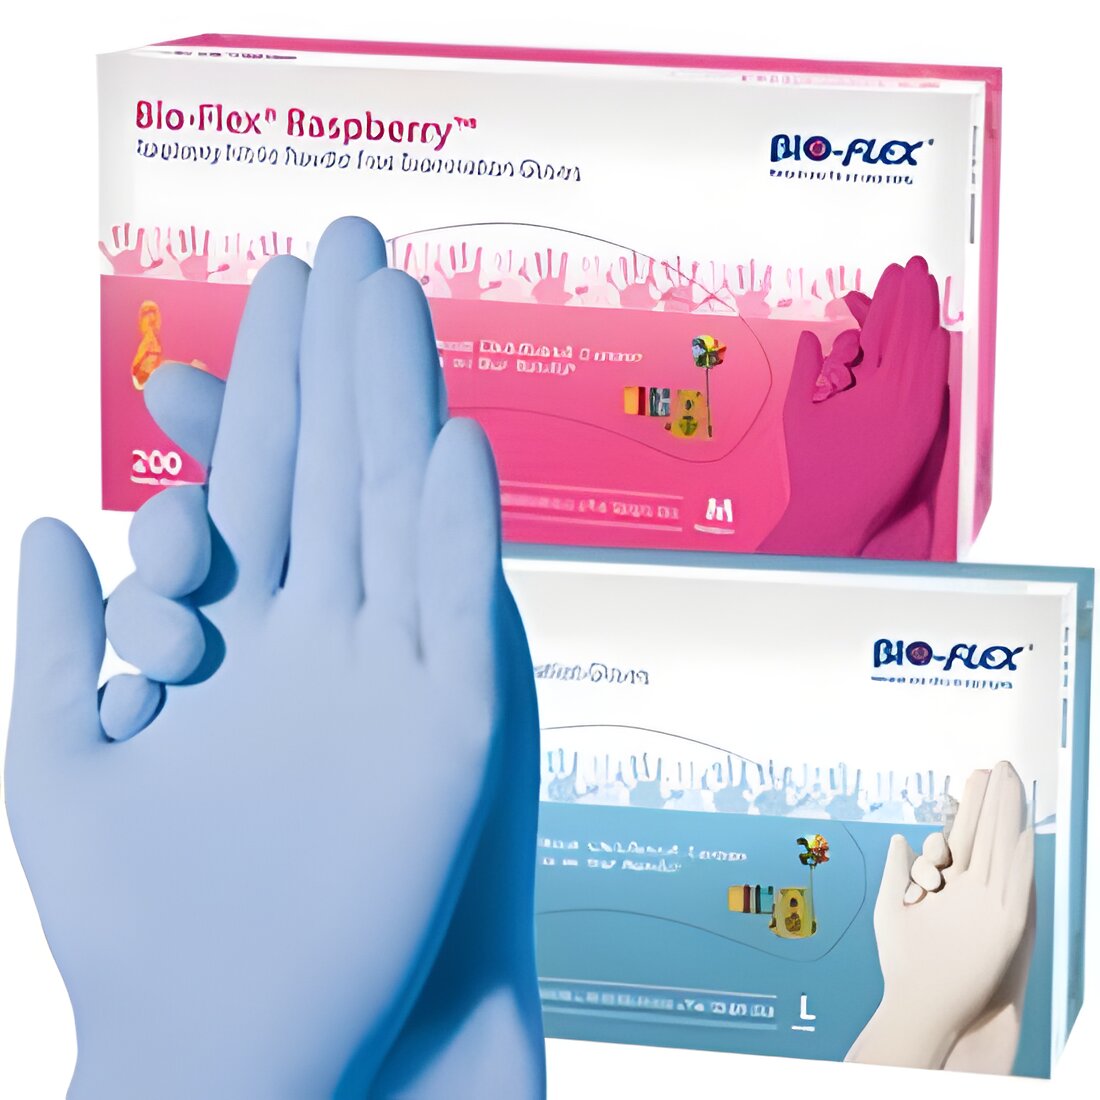 Free Bio-Flex Gloves